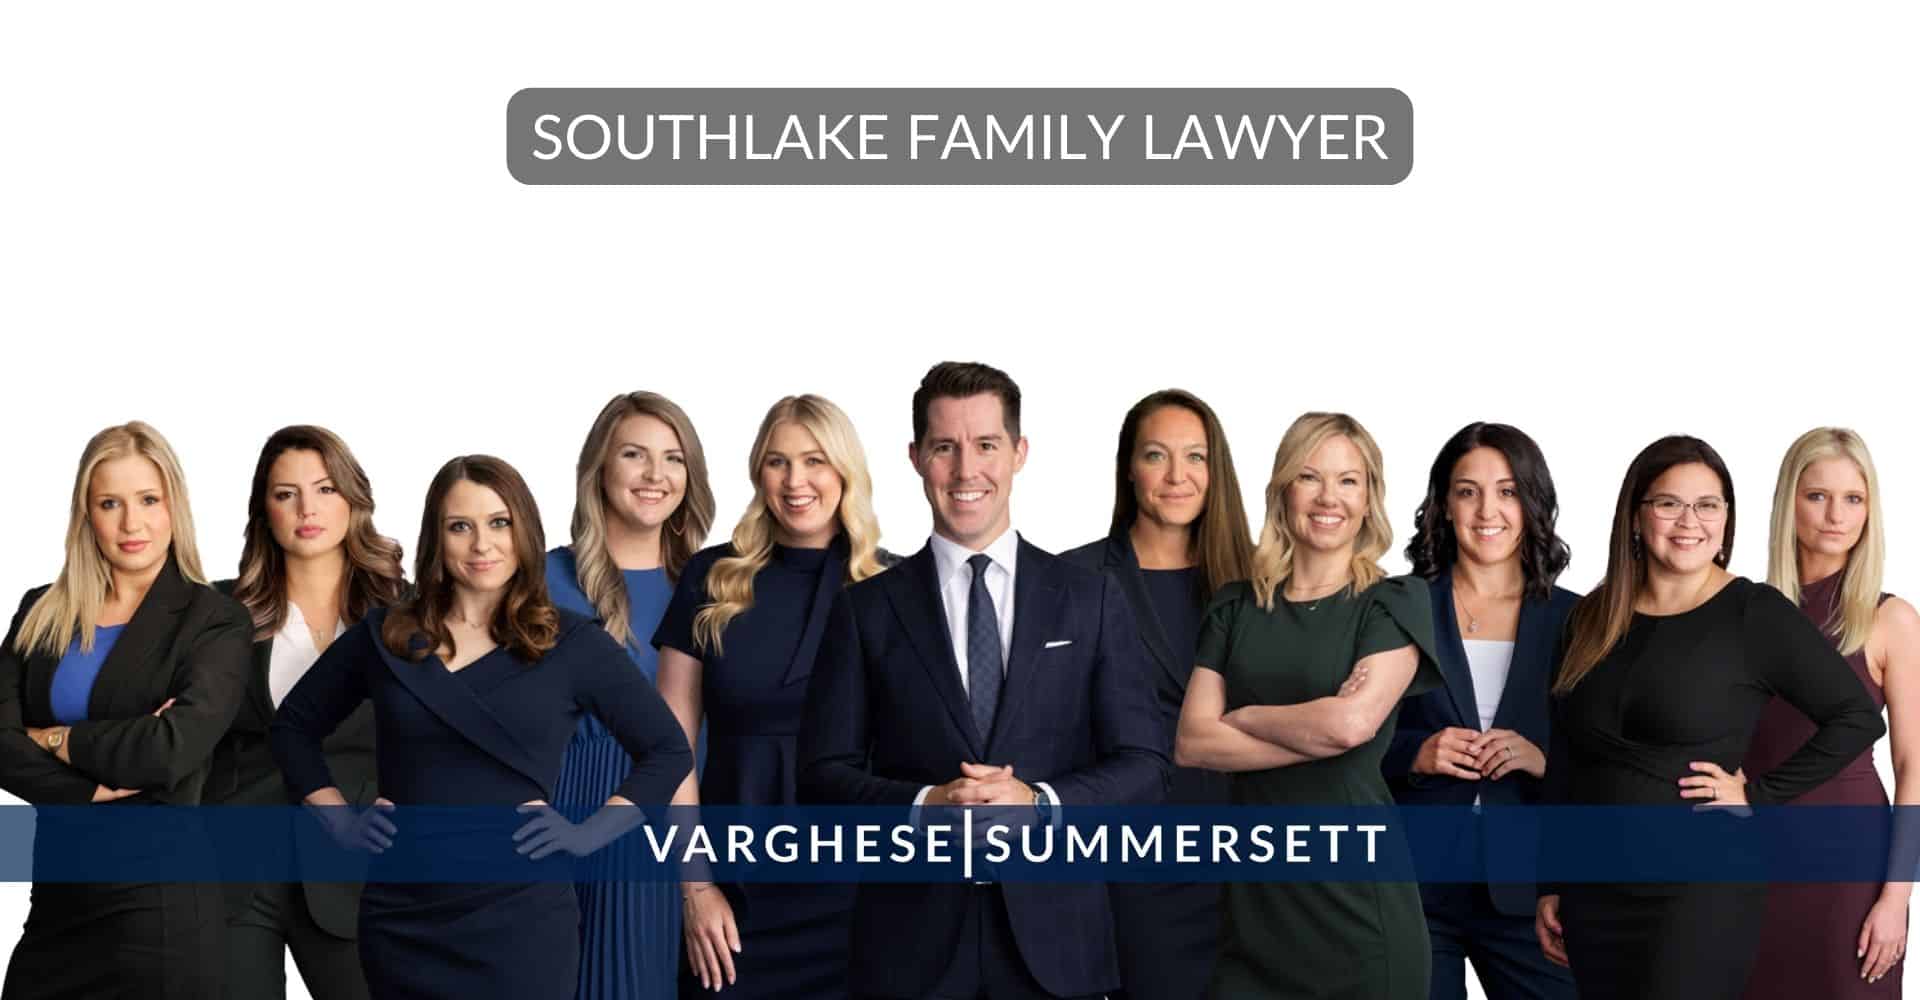 Southlake Family Lawyer